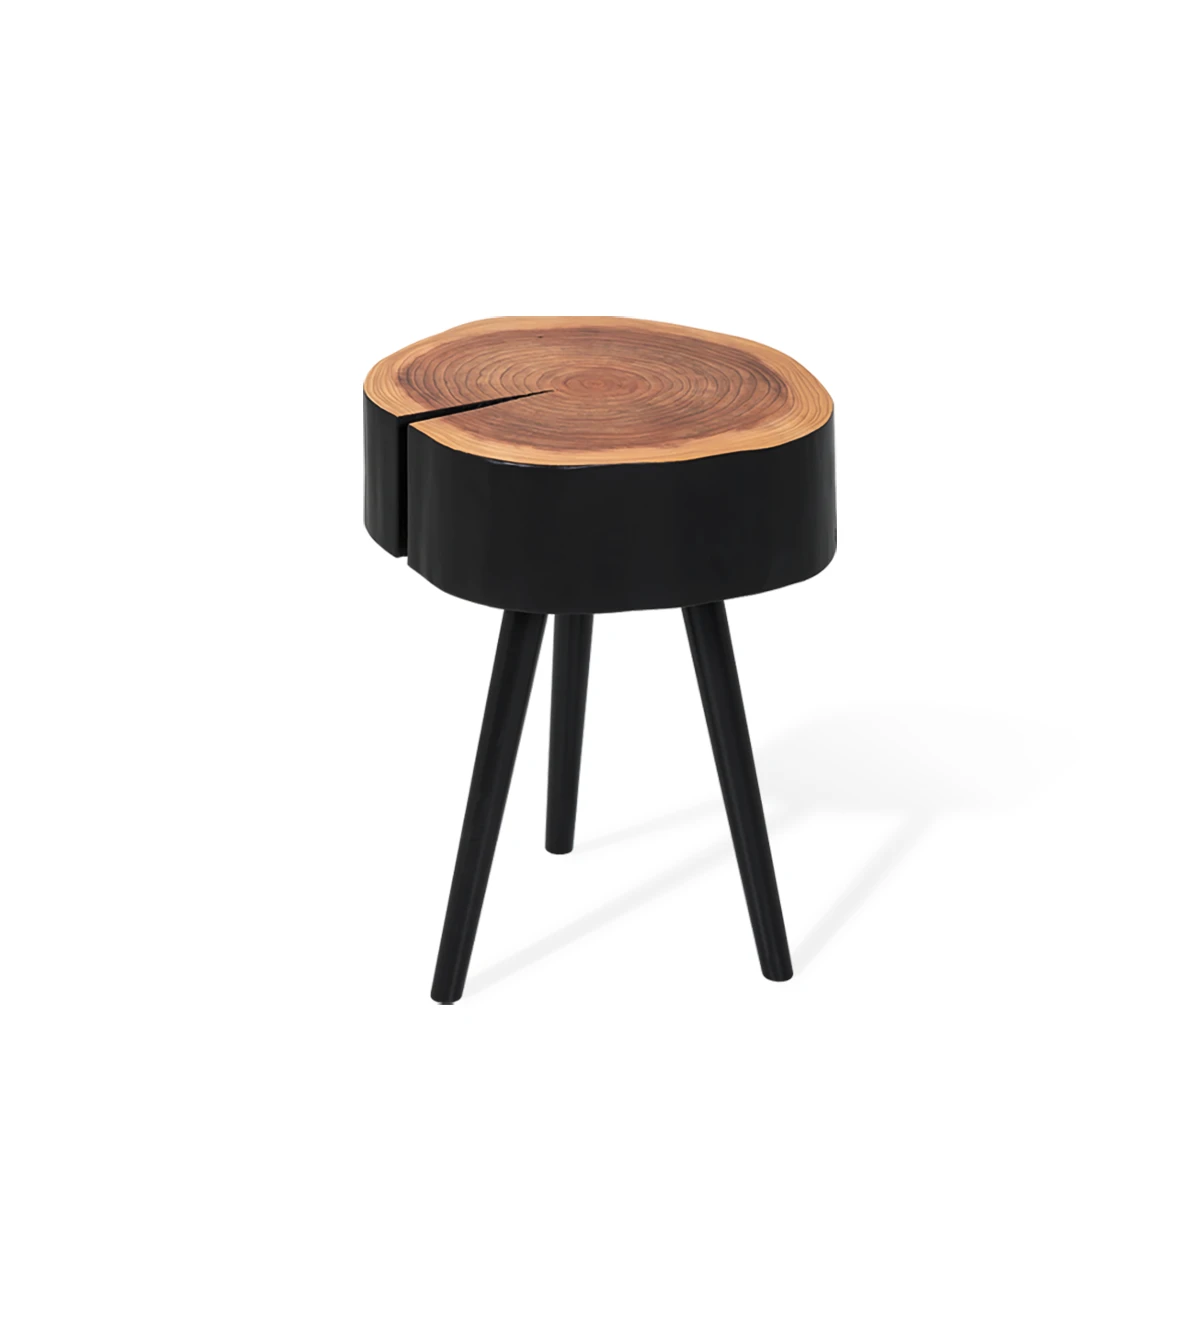 Table d'Appui Tronc en bois naturel de cryptoméria laqué noir, pieds laqués noir, Ø 35 à 45 cm.